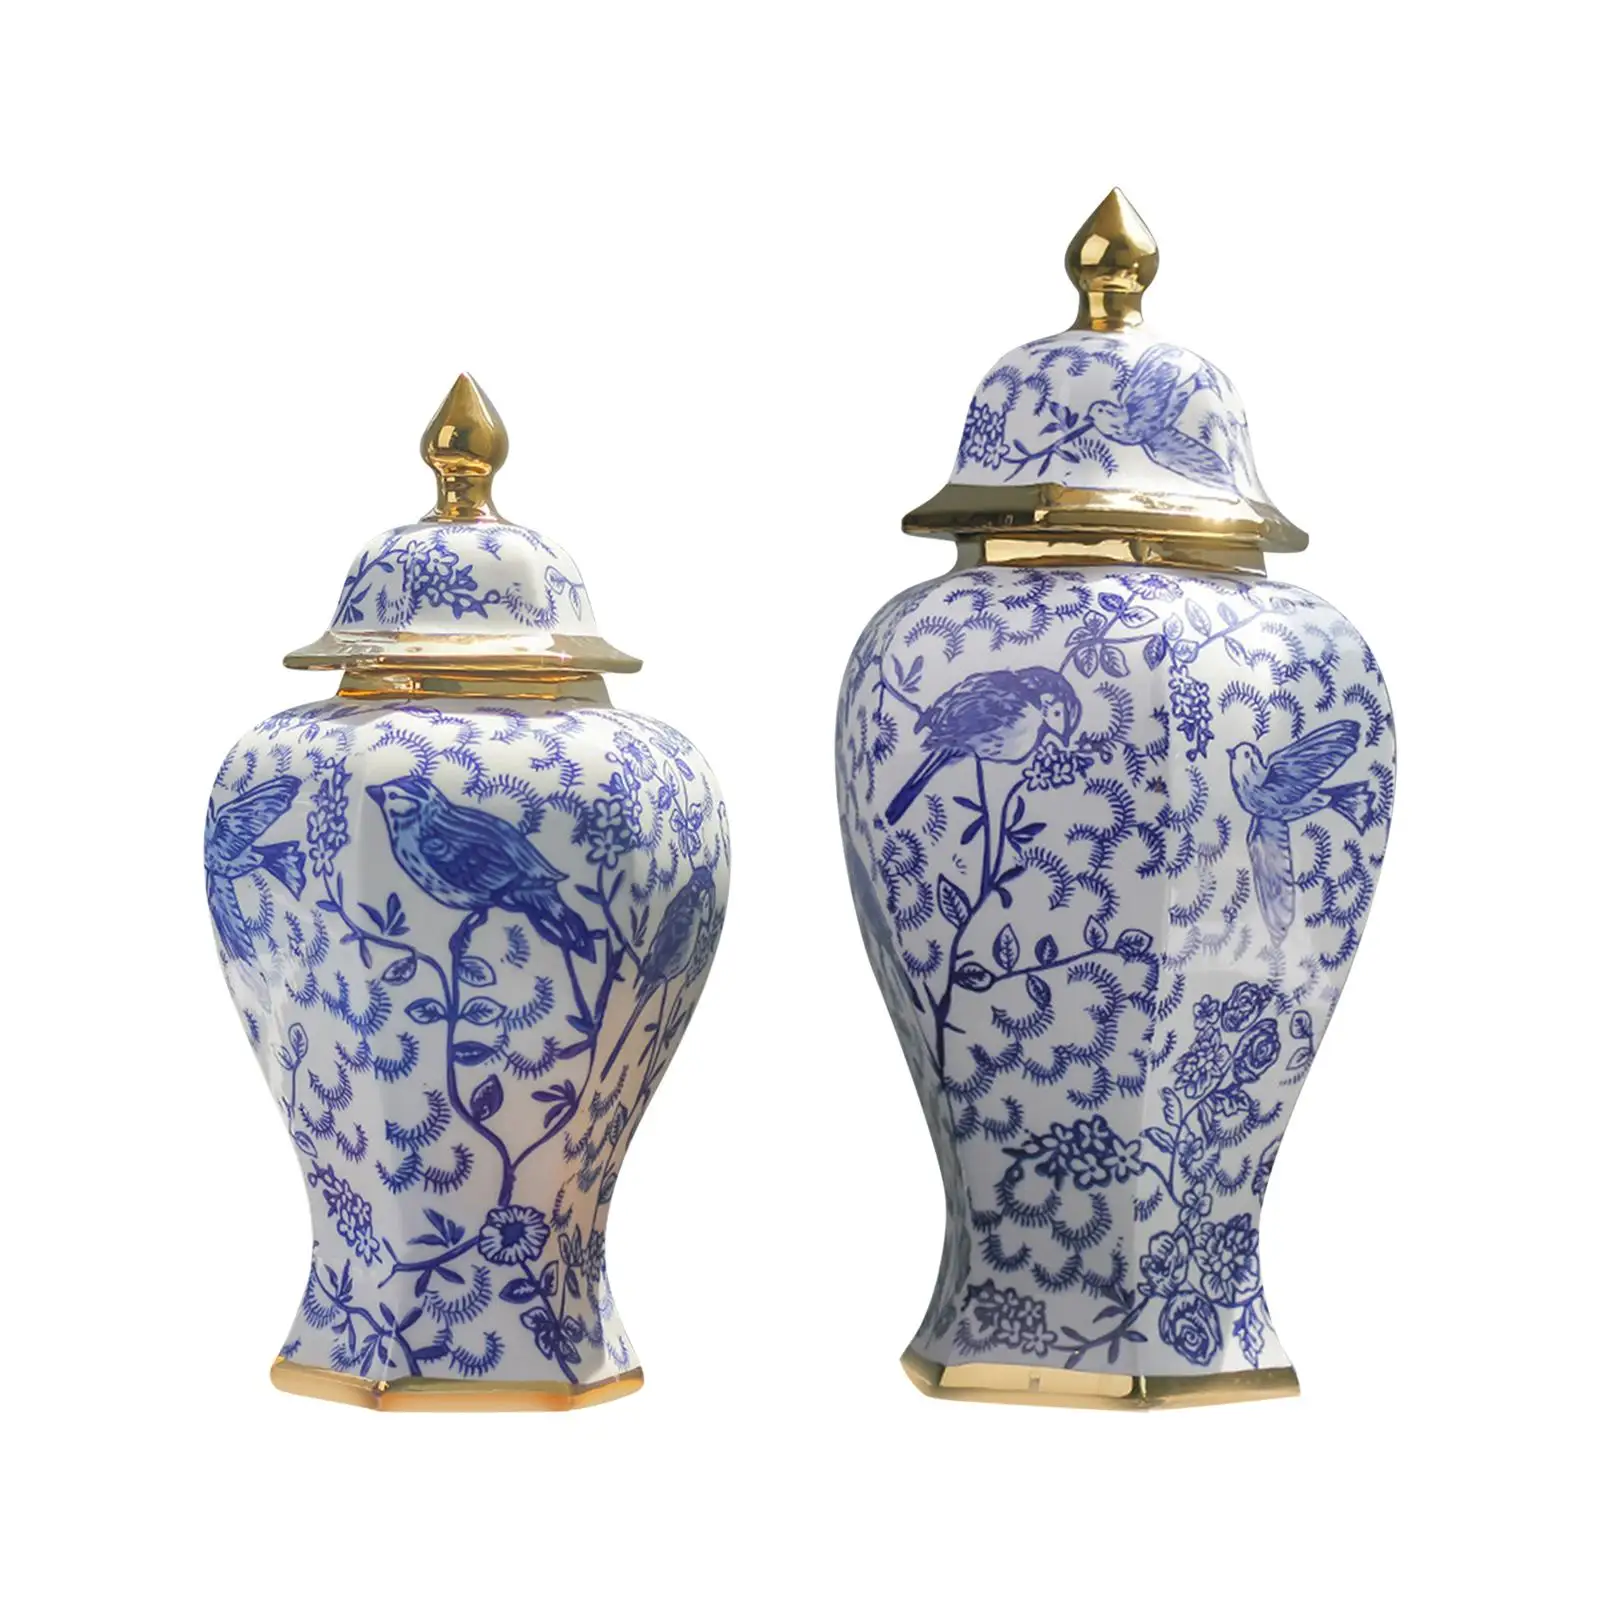 

Декоративная керамическая Имбирная банка, глазурованная ваза для сушеных цветов, домашний акцент, Азиатский декор, Цветочная композиция, фарфоровая банка для офиса и дома